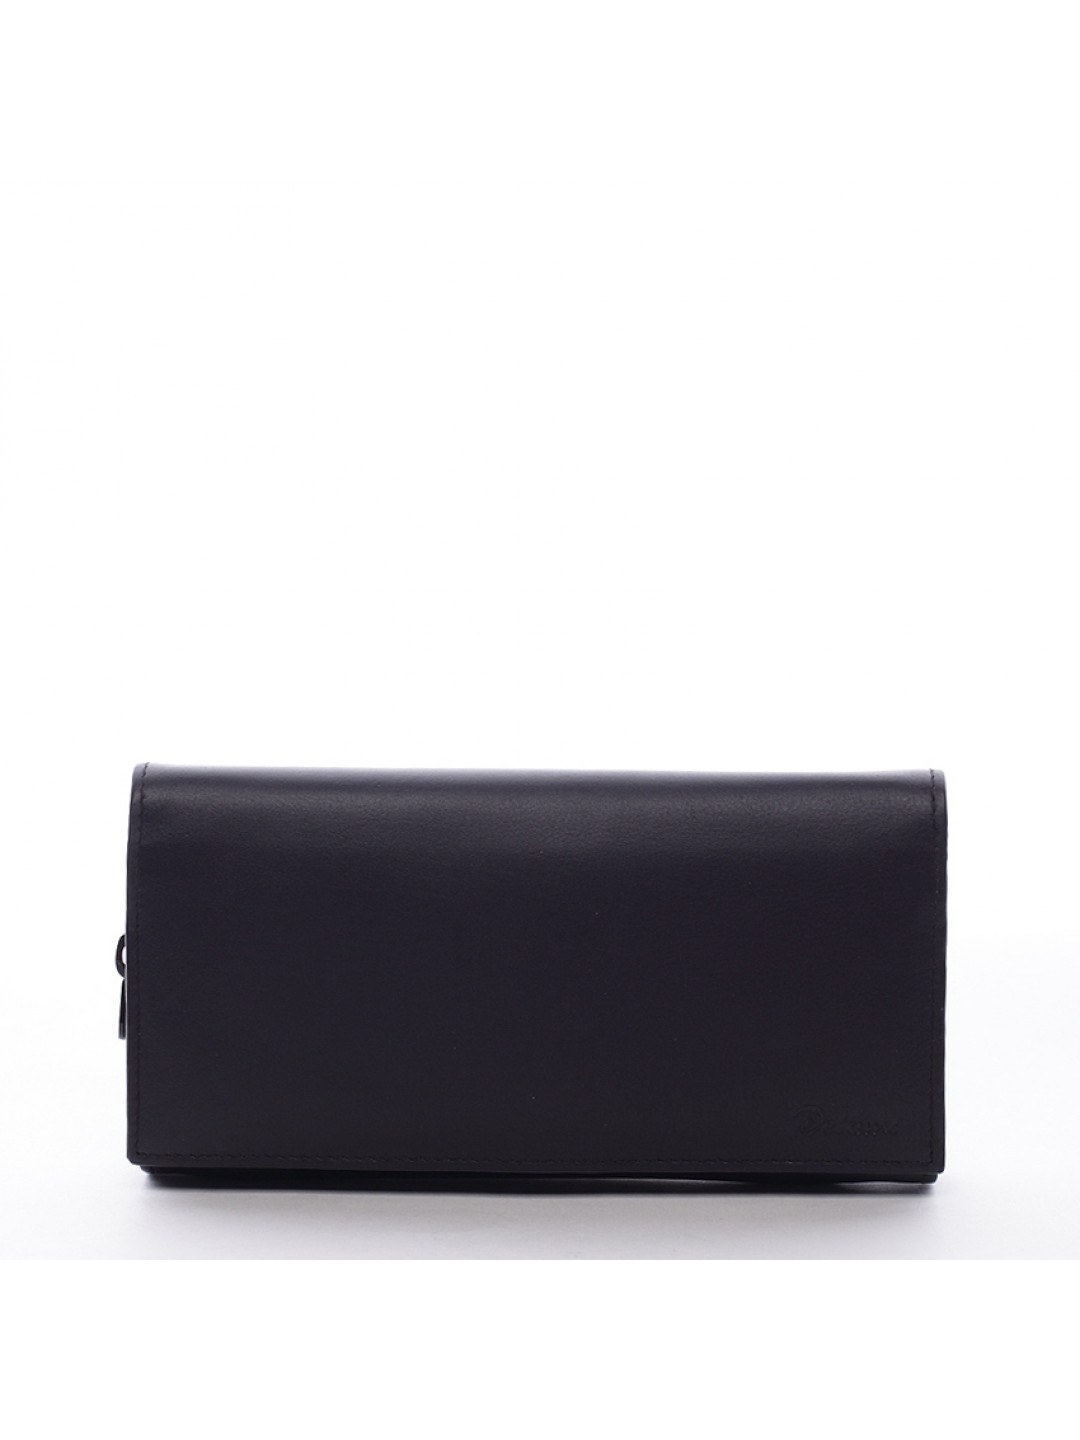 Dámská kožená peněženka DELAMI Luxury BLACK